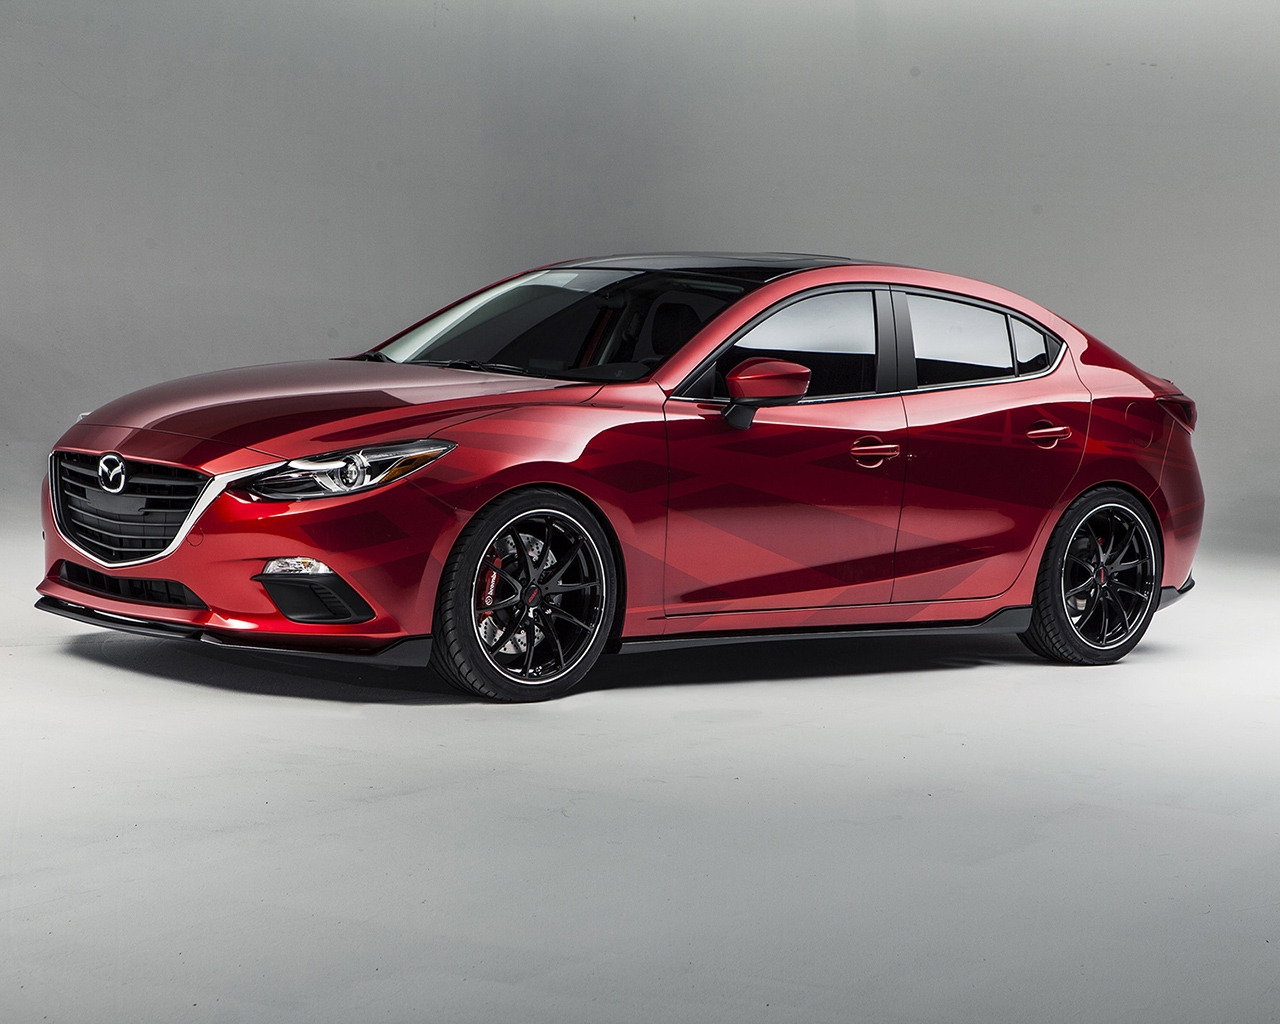 2013 Mazda Sema Concept for 1280 x 1024 resolution